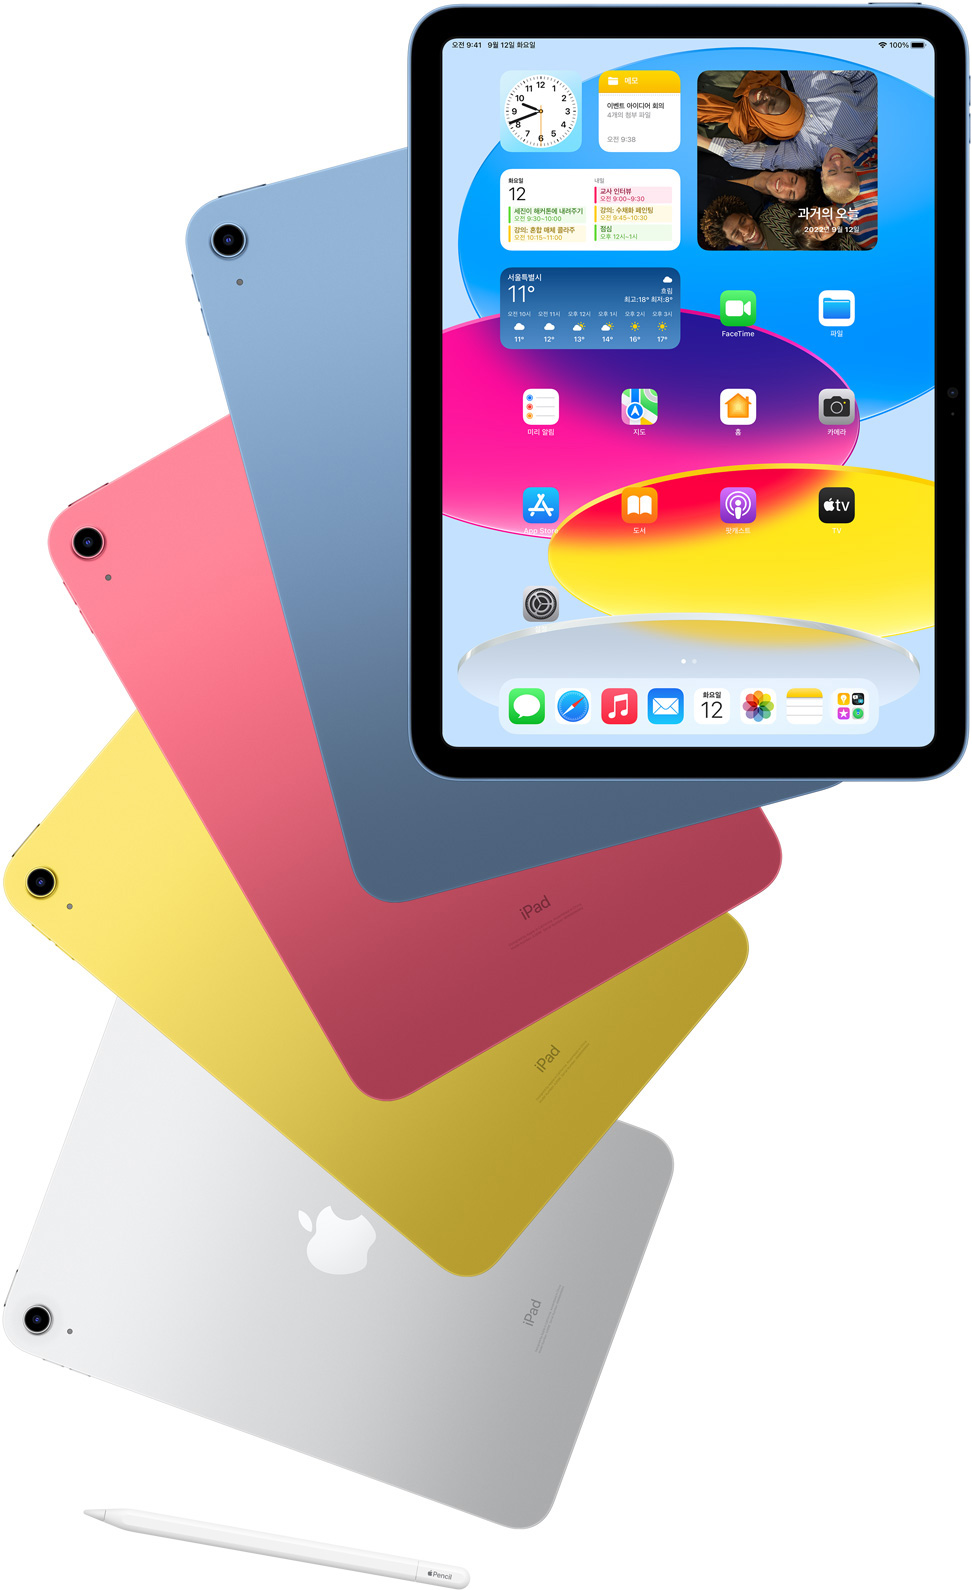 홈 화면이 표시된 iPad의 앞면이 보이고, 그 뒤로 블루, 핑크, 옐로 및 실버 색상 iPad의 뒷면이 보이도록 배치된 모습. 정렬된 iPad 모델들 근처에 Apple Pencil 한 개가 놓여 있습니다.